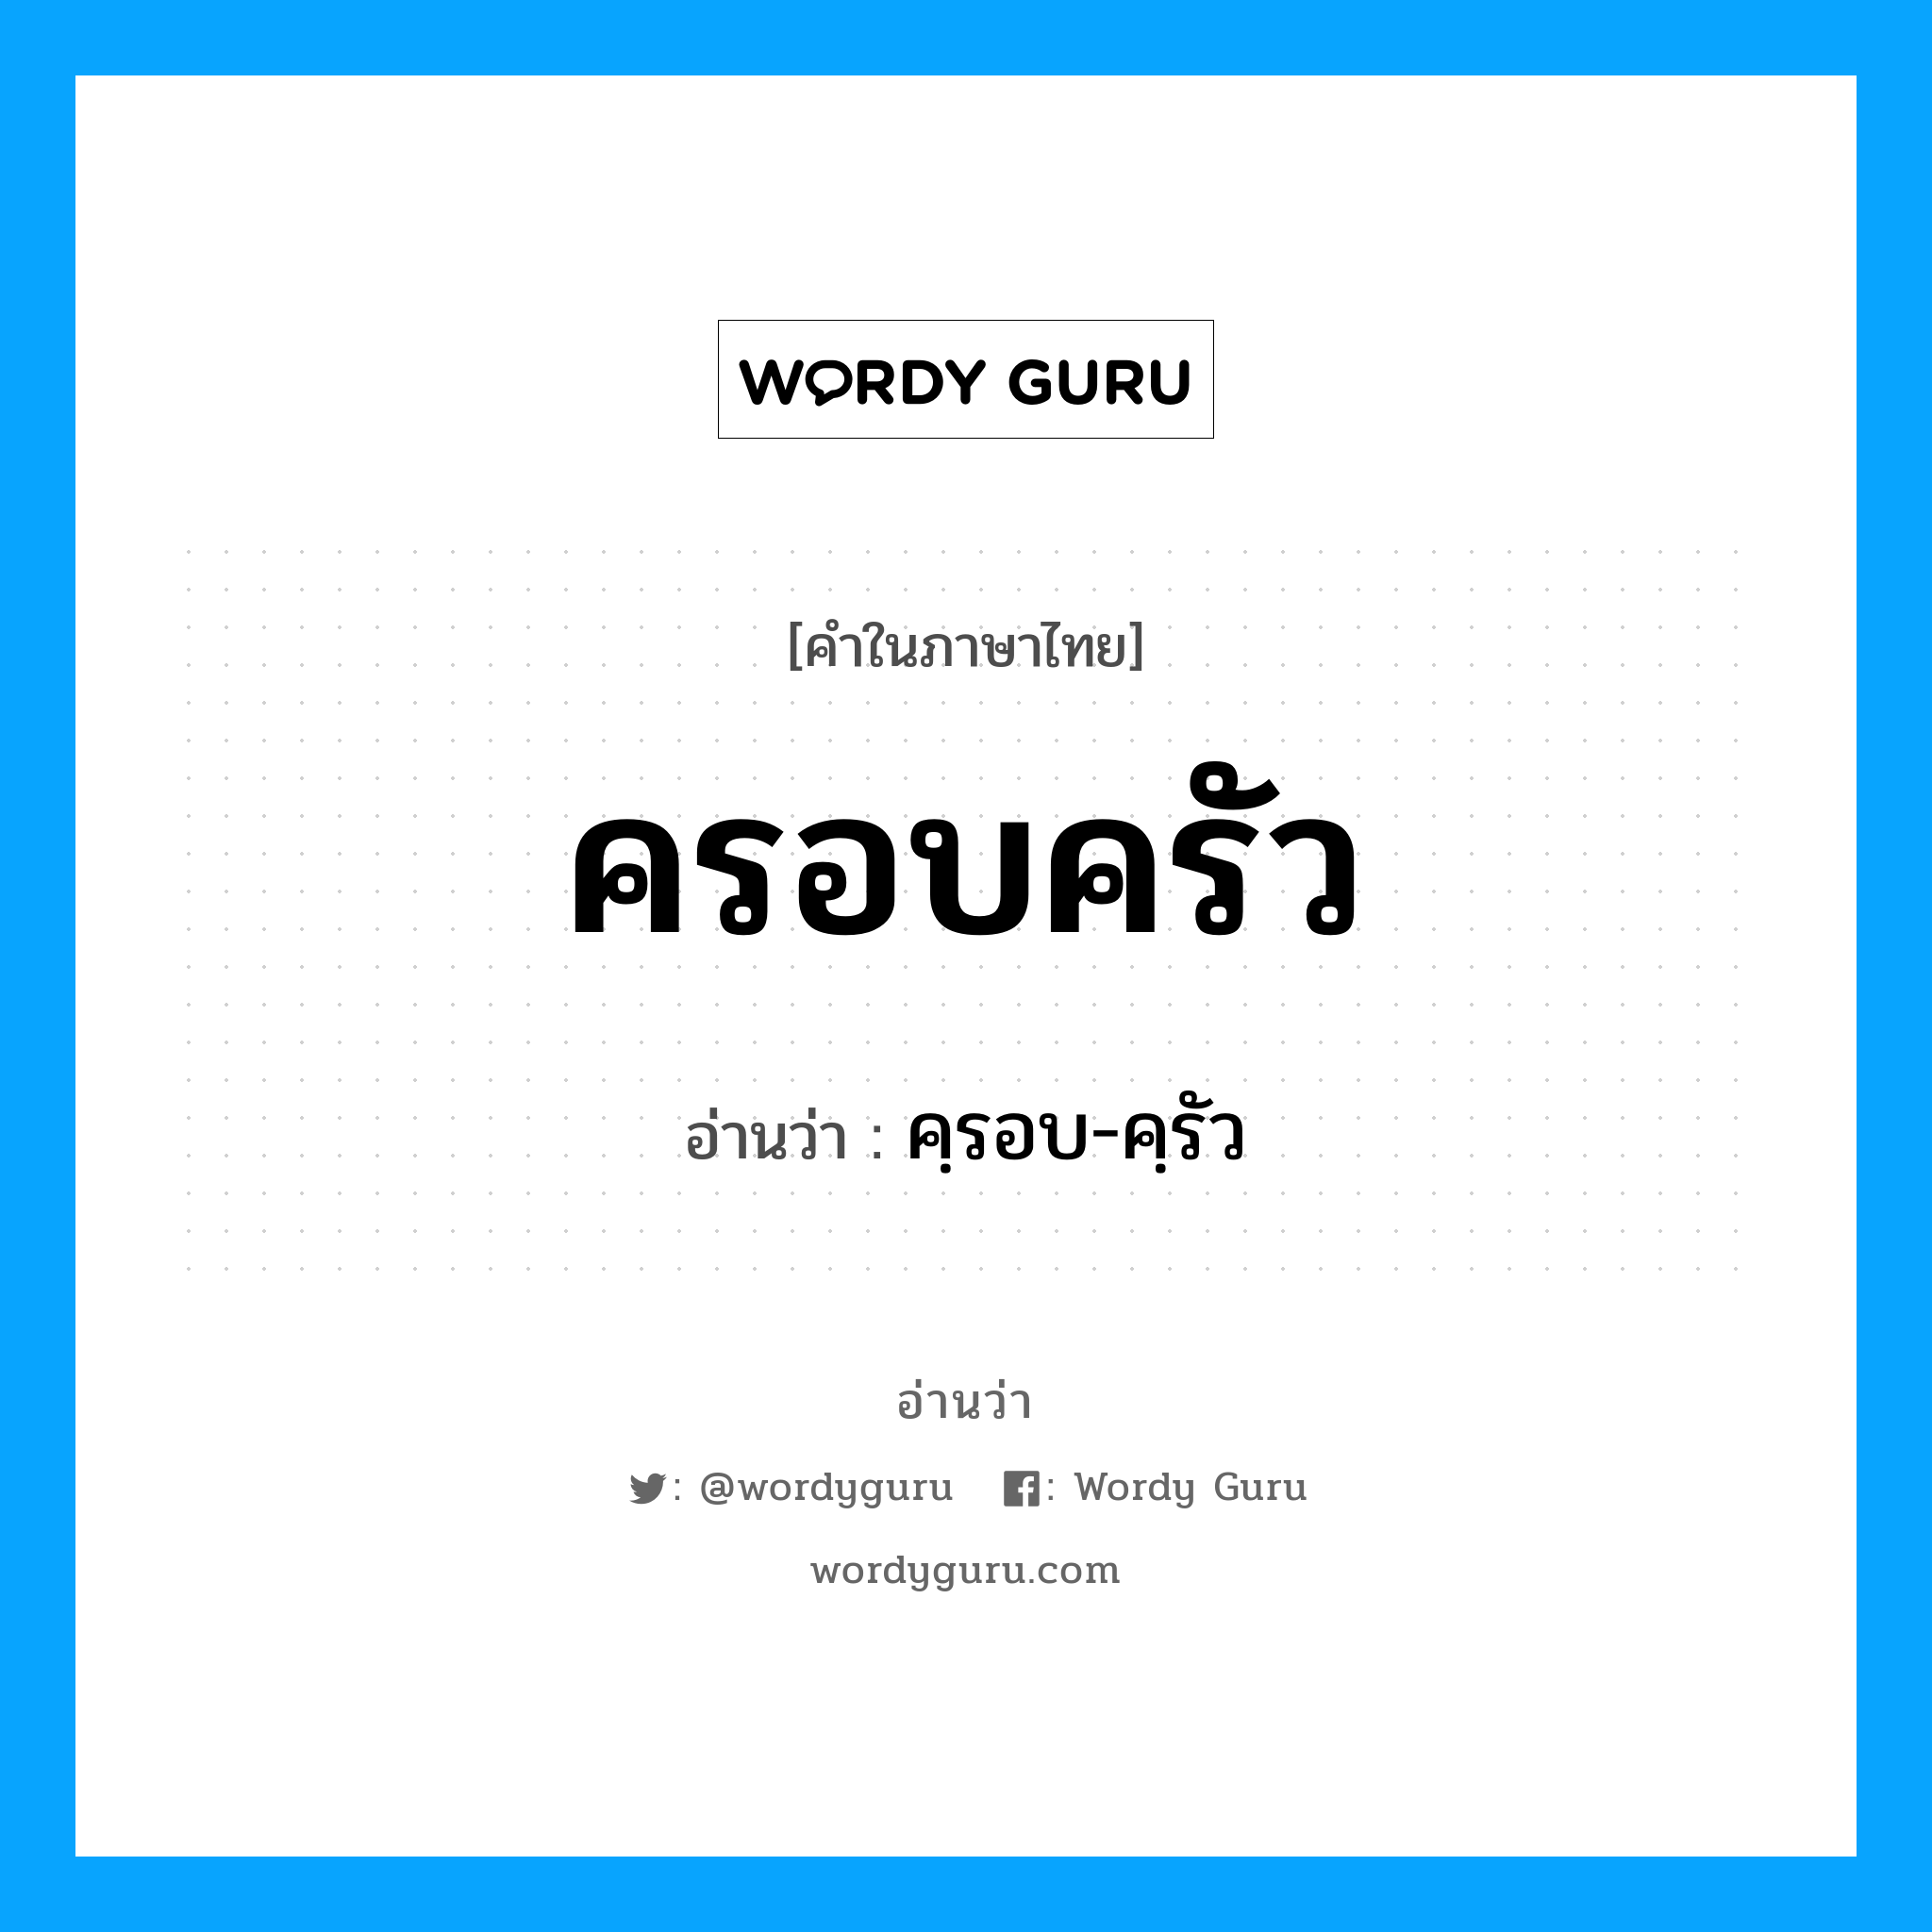 คฺรอบ-คฺรัว เป็นคำอ่านของคำไหน?, คำในภาษาไทย คฺรอบ-คฺรัว อ่านว่า ครอบครัว